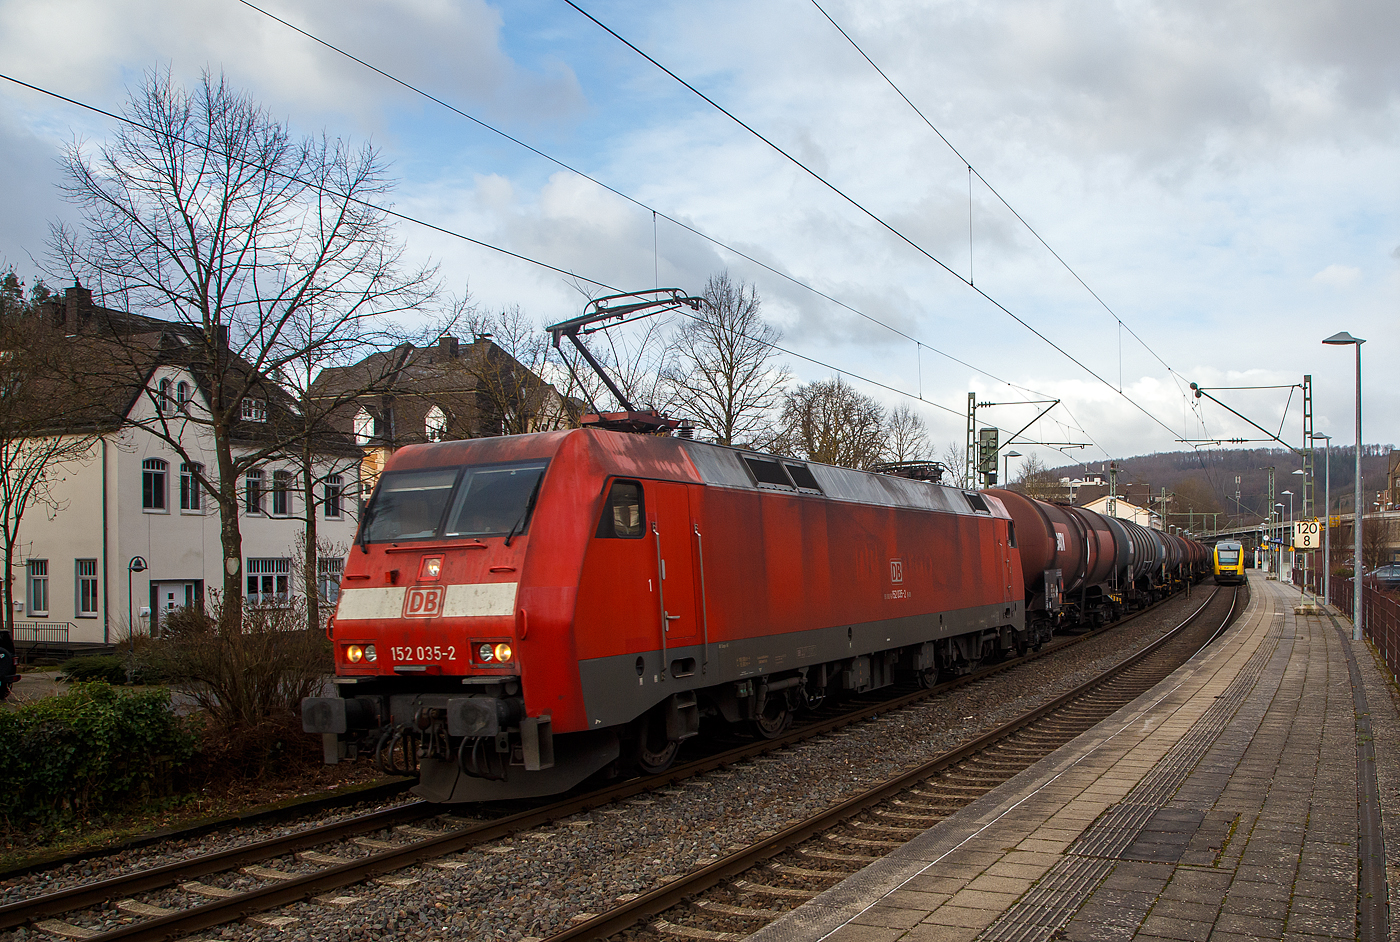 Die 152 035-2 der DB Cargo AG fährt am 04.02.2023 mit einem Heizöl oder Diesel Kesselwagenzug durch den Bahnhof Kirchen (Sieg) in Richtung Köln, während rechts der VT 202 ABbp (95 80 0640 102-9 D-HEB) ein Alstom Coradia LINT 27 der (Hessische Landesbahn), als RB 90 (Umlauf 61718)  Westerwald-Sieg-Bahn  (Westerburg - Altenkirchen - Au/Sieg - Betzdorf - Siegen) hält.

Die SIEMENS ES64F wurde 1998 bei Krauss Maffei (heute SIEMENS Mobilitiy, wobei Siemens schon die elektrische Ausrüstung lieferte) in München-Allach unter der Fabriknummer 20162 gebaut.